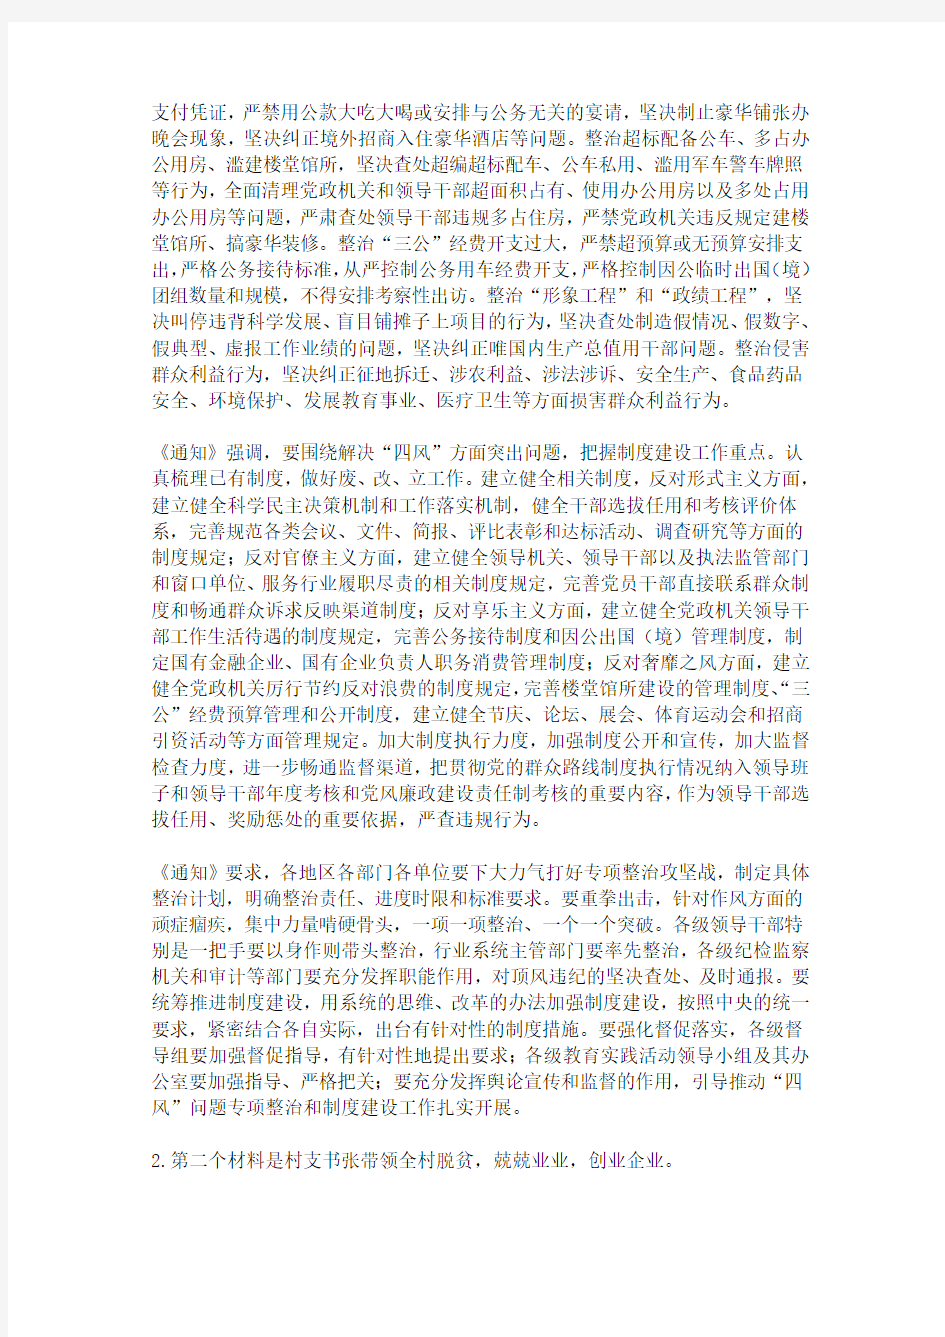 河南省郑州市直机关2015年5月遴选公务员考试笔试真题